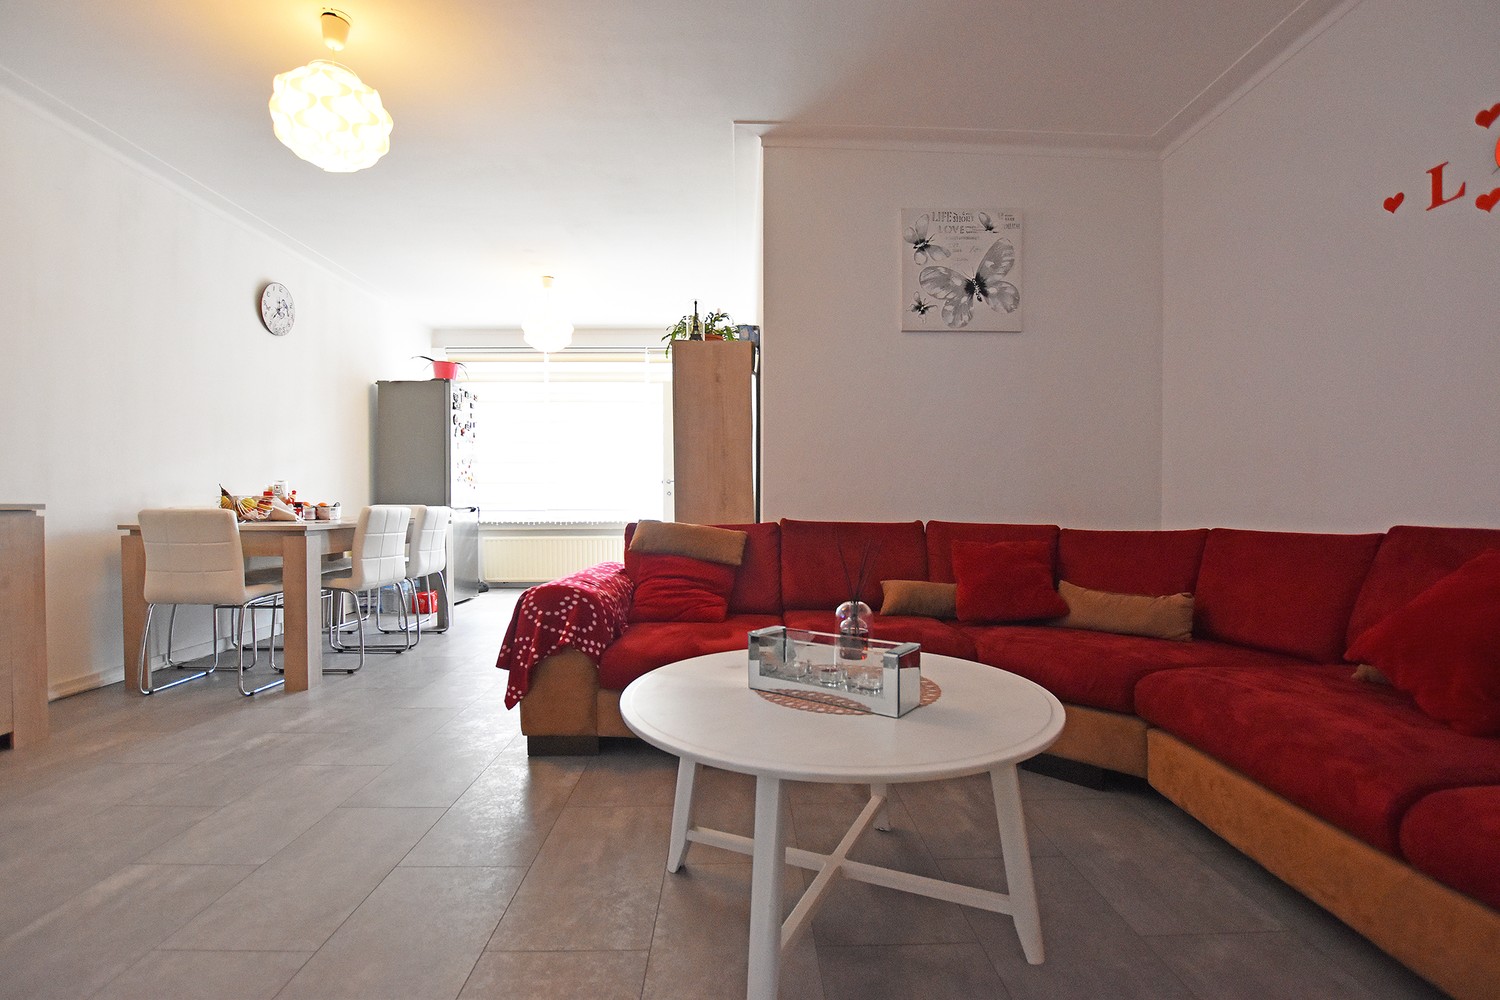 Gelijkvloers appartement met twee slaapkamers, tuin en garagebox op goede locatie te Borsbeek! afbeelding 2